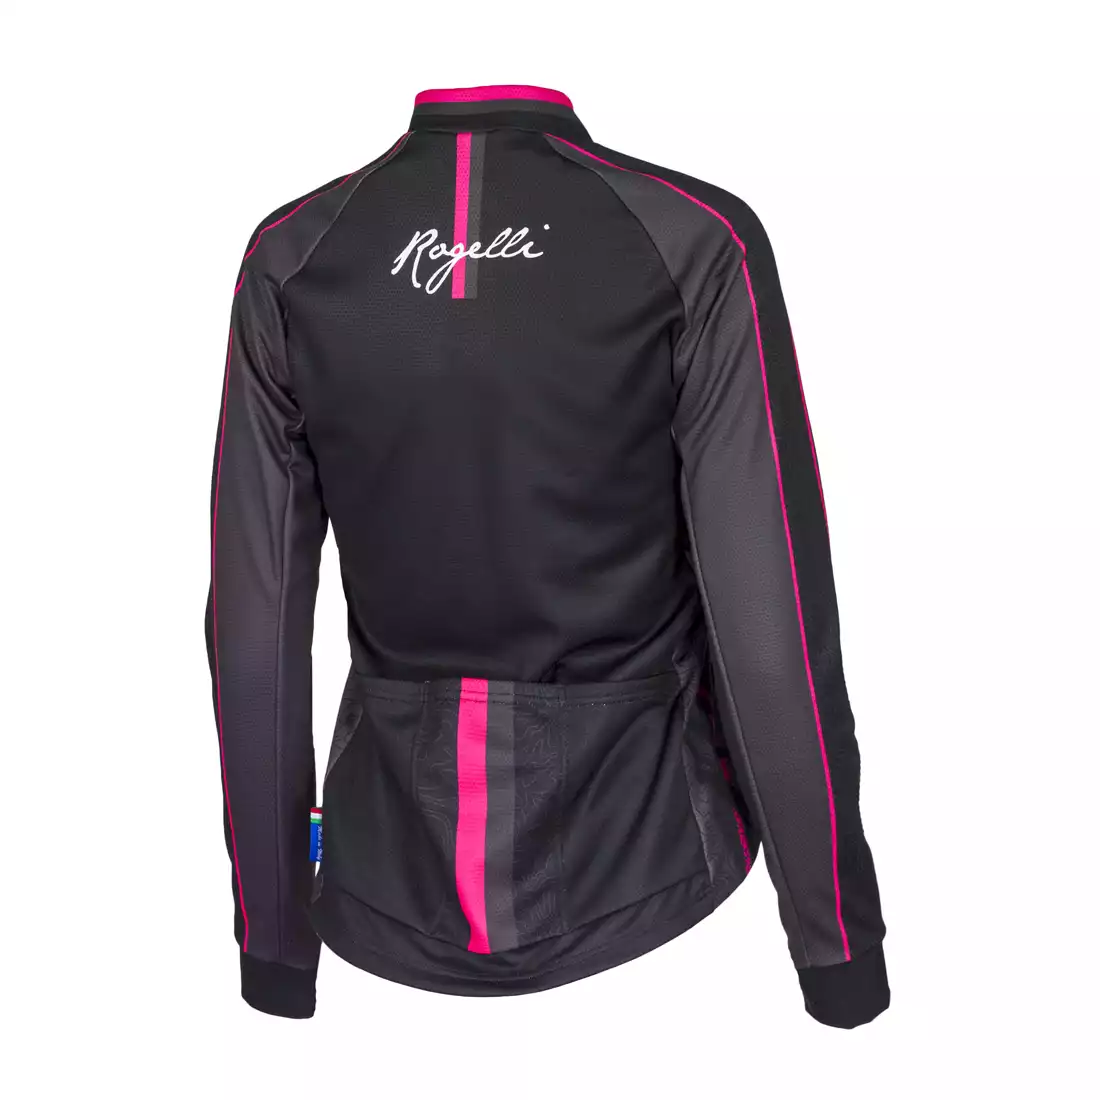 ROGELLI MANICA ROSA 010.137 damska bluza rowerowa, czarno-różowa